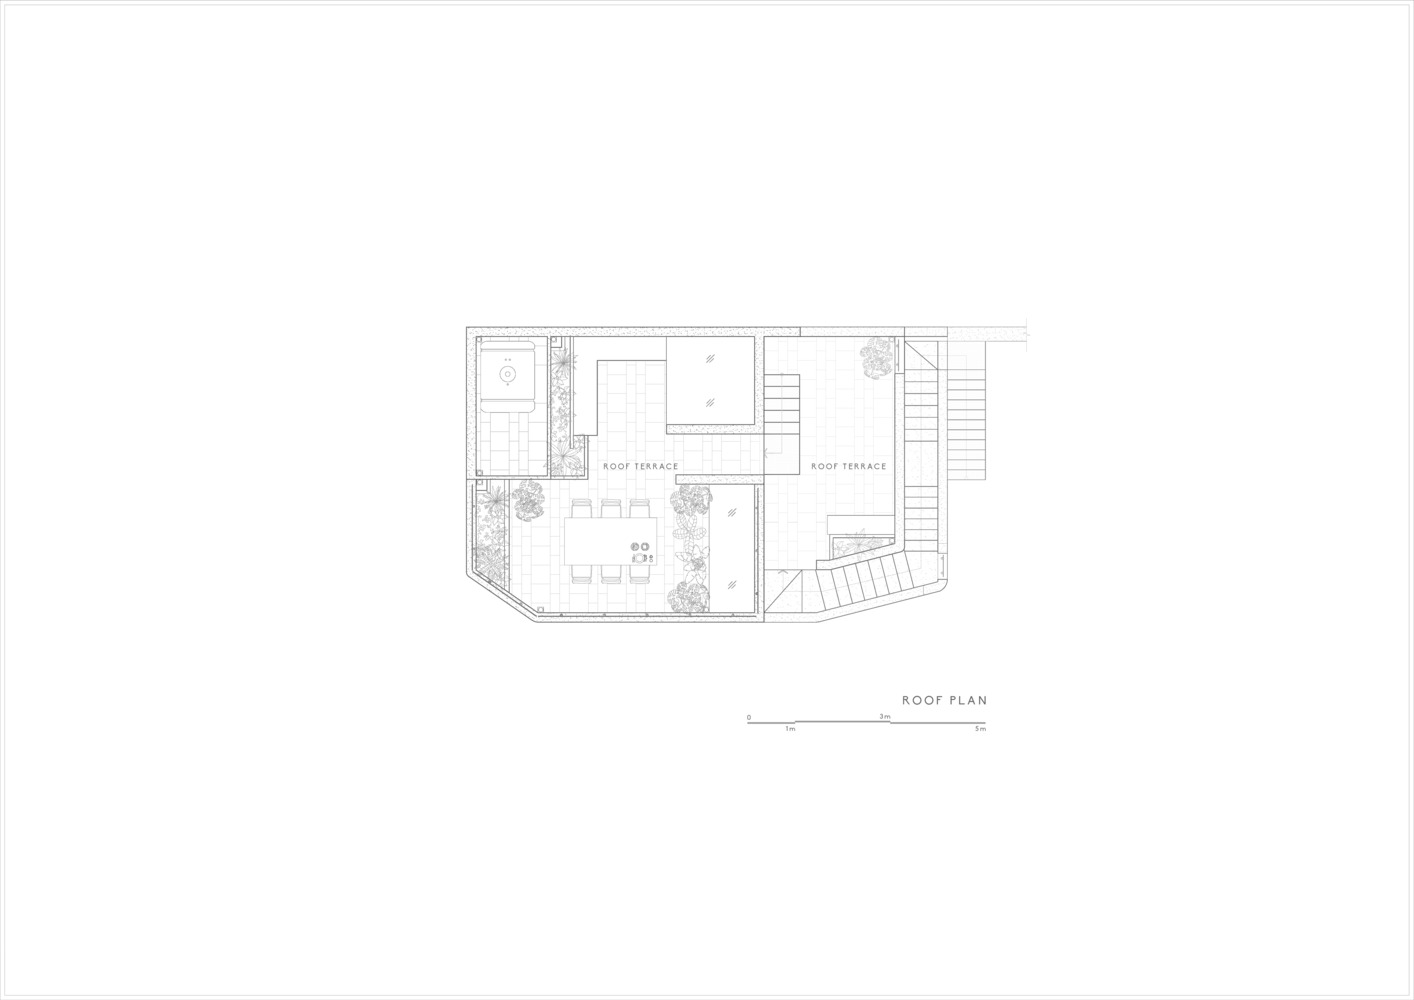 CHI's House: Kiến trúc phản ánh những yếu tố đối lập, tạo nên sự bí ẩn cho ngôi nhà giữa lòng Đà Lạt - Ảnh 23